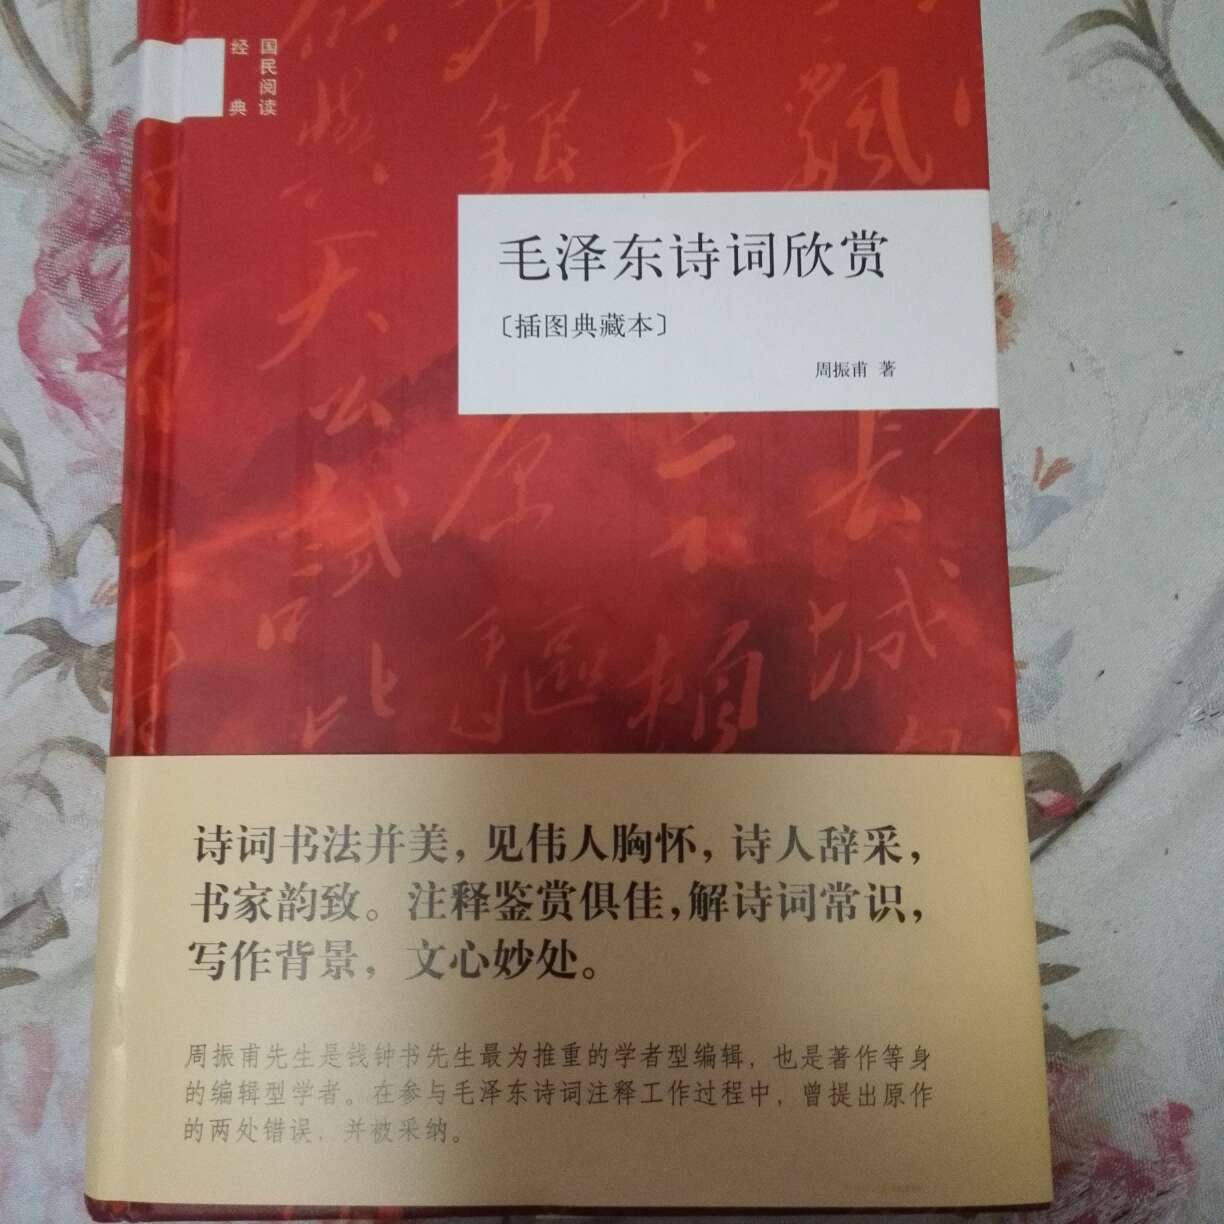 质量好，里面配的插图也非常不错，今年的中国诗词大会反复在讲毛主席的诗词，果断买一本回来慢慢学习。